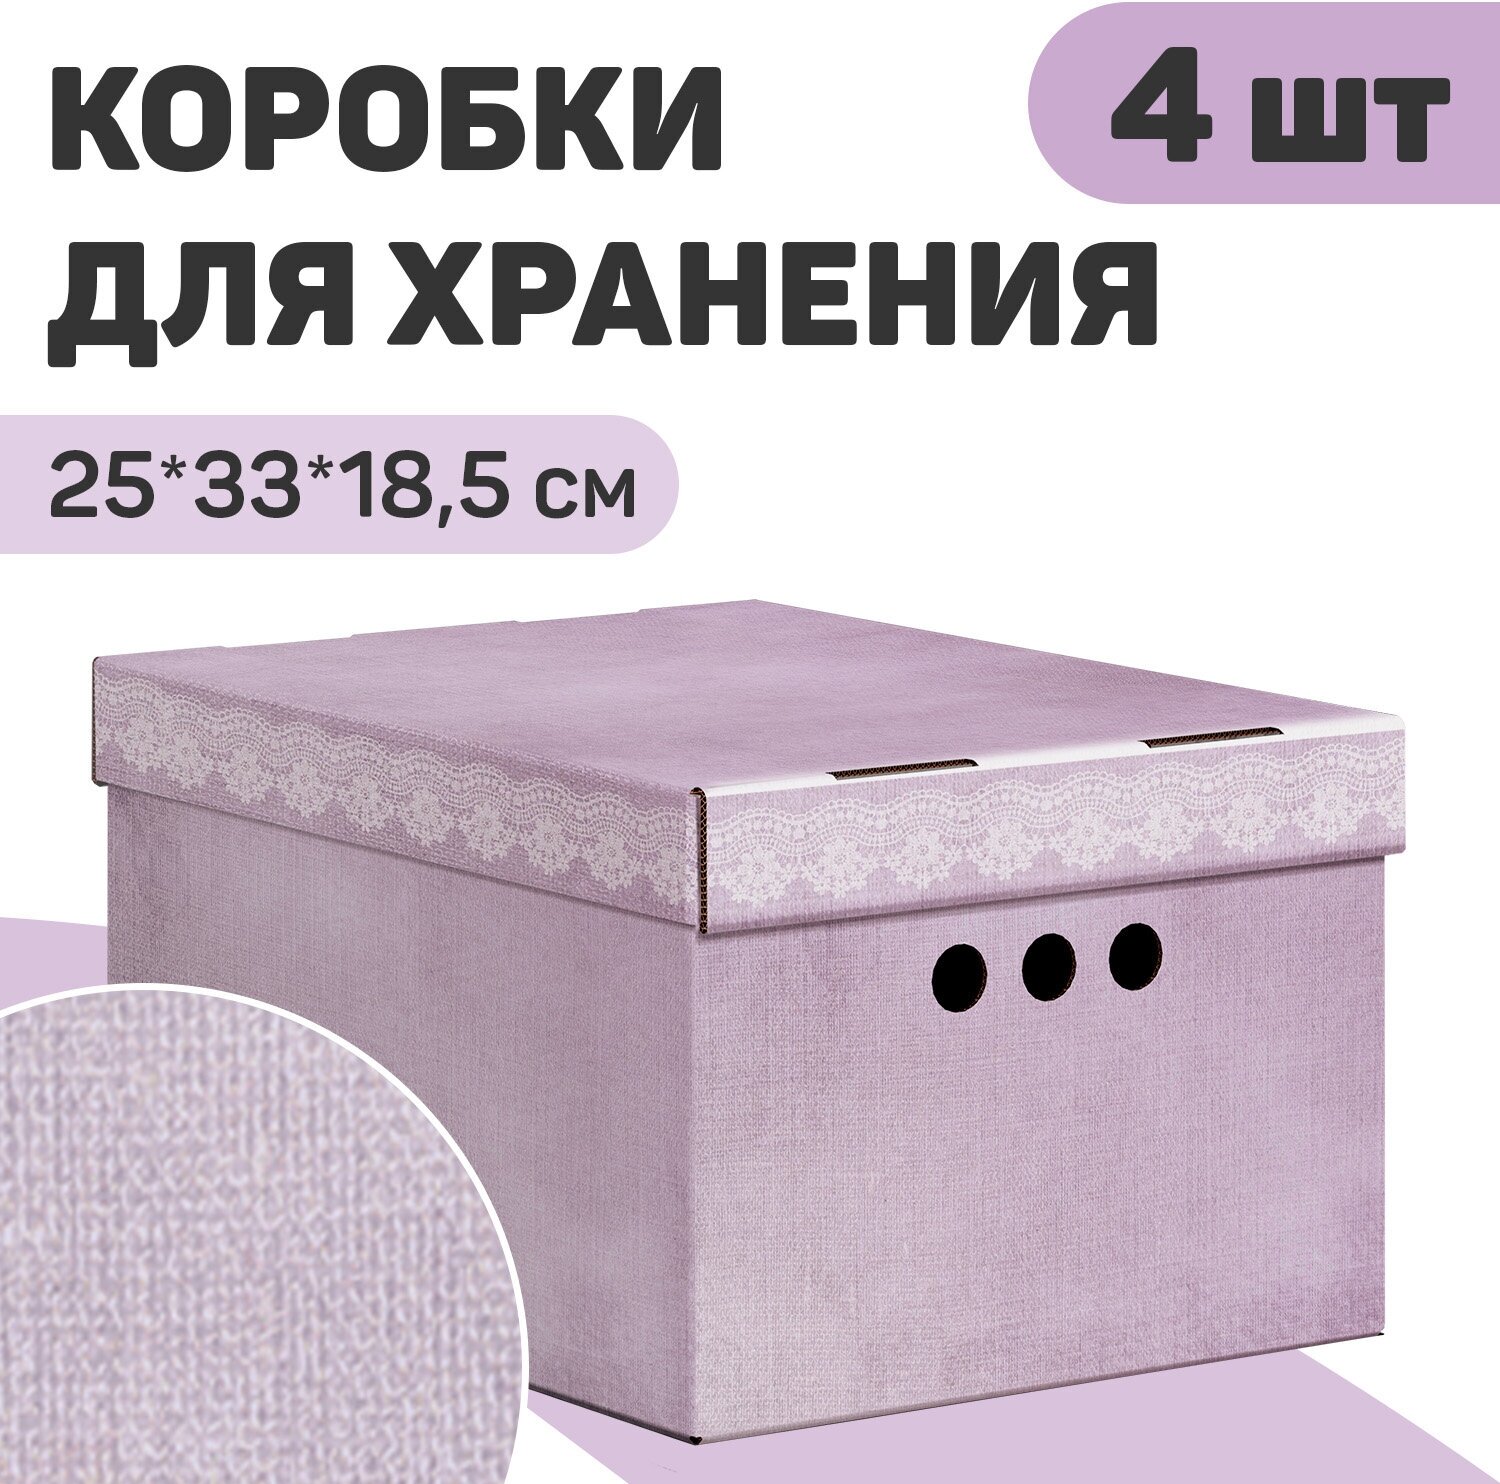 Короб картонный, малый, 25*33*18.5 см, 2 цвета, набор 4 шт, LAVANDE mono